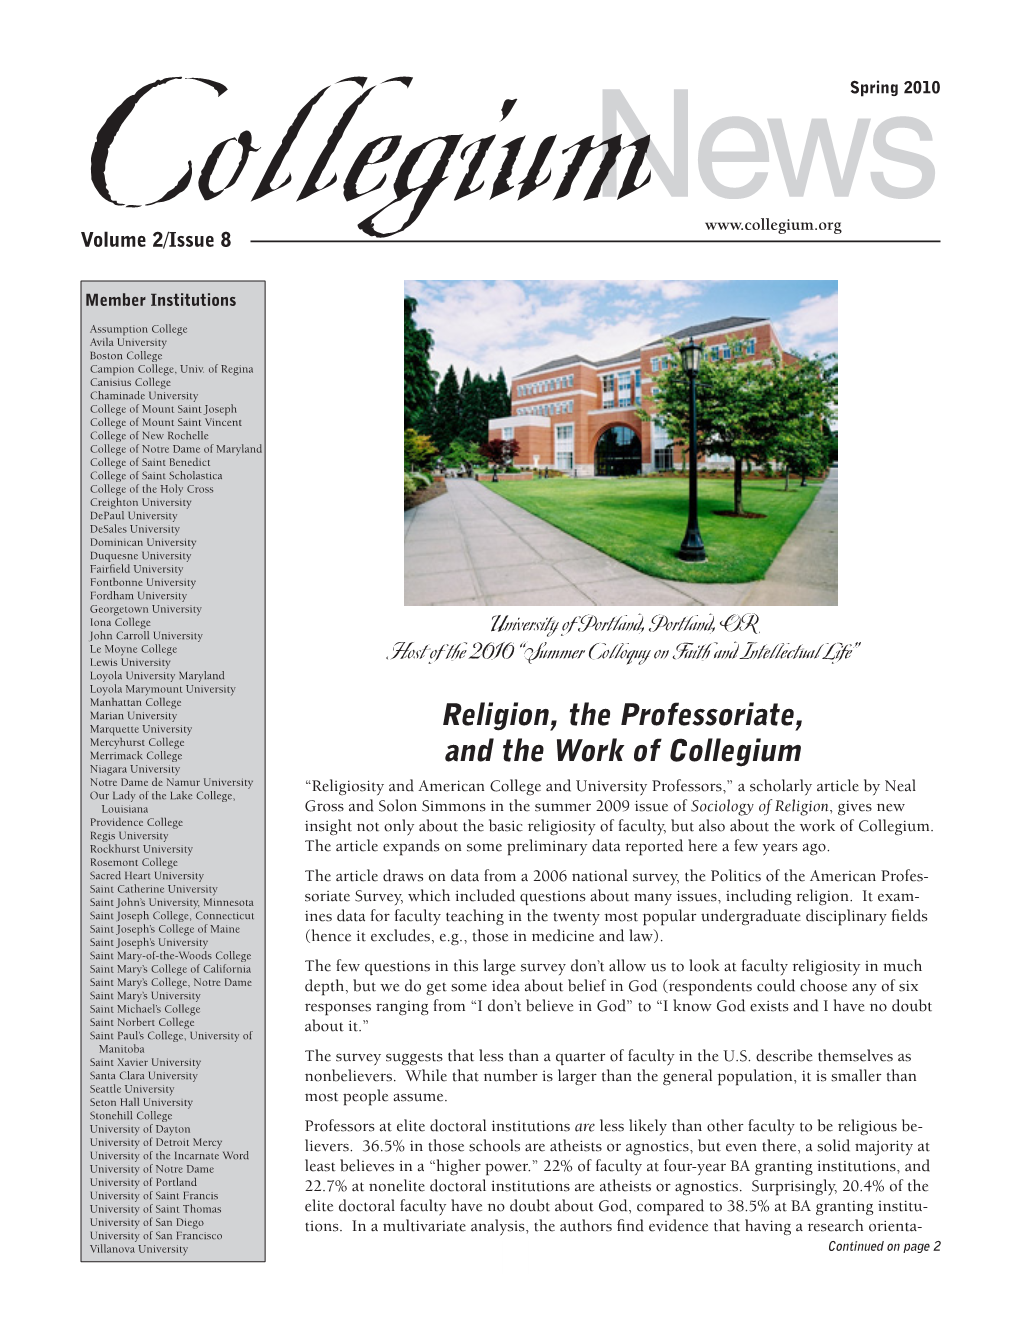 Religion, the Professoriate, and the Work of Collegium